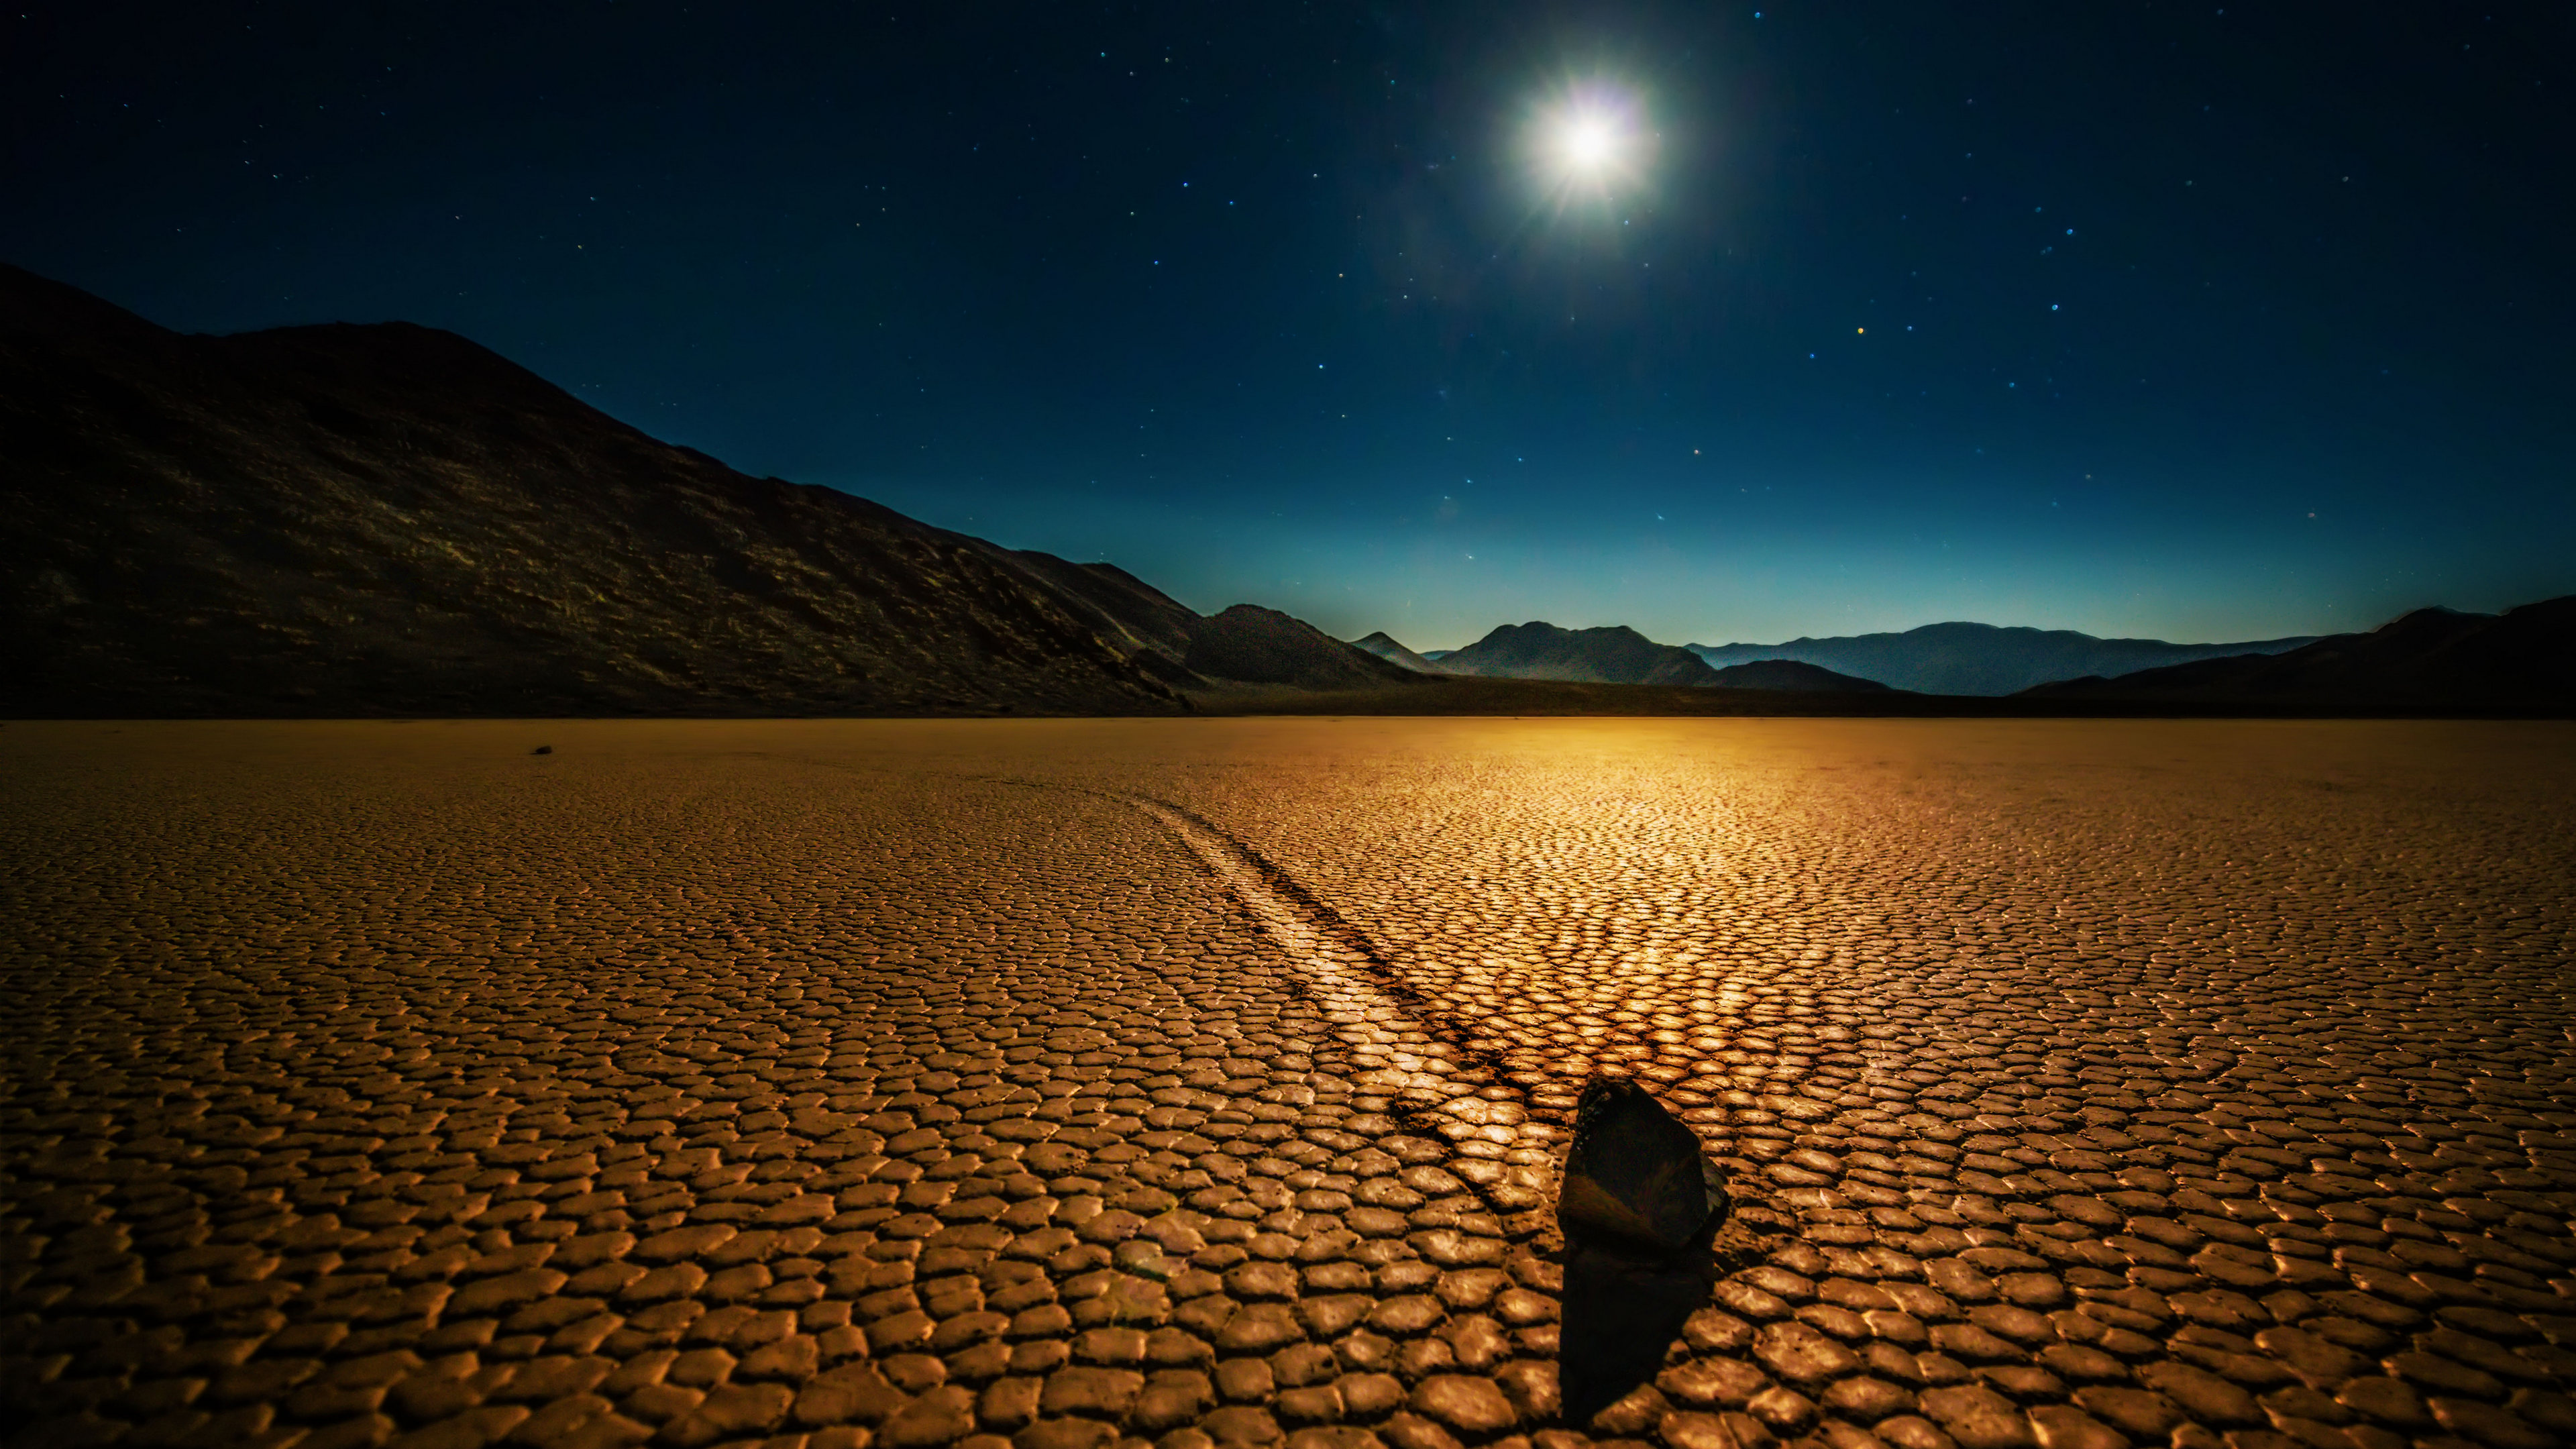 Landscape 4K Desert Death Valley Mojave Desert Night Stars Rocks Mountains Nature Sky 3840x2160